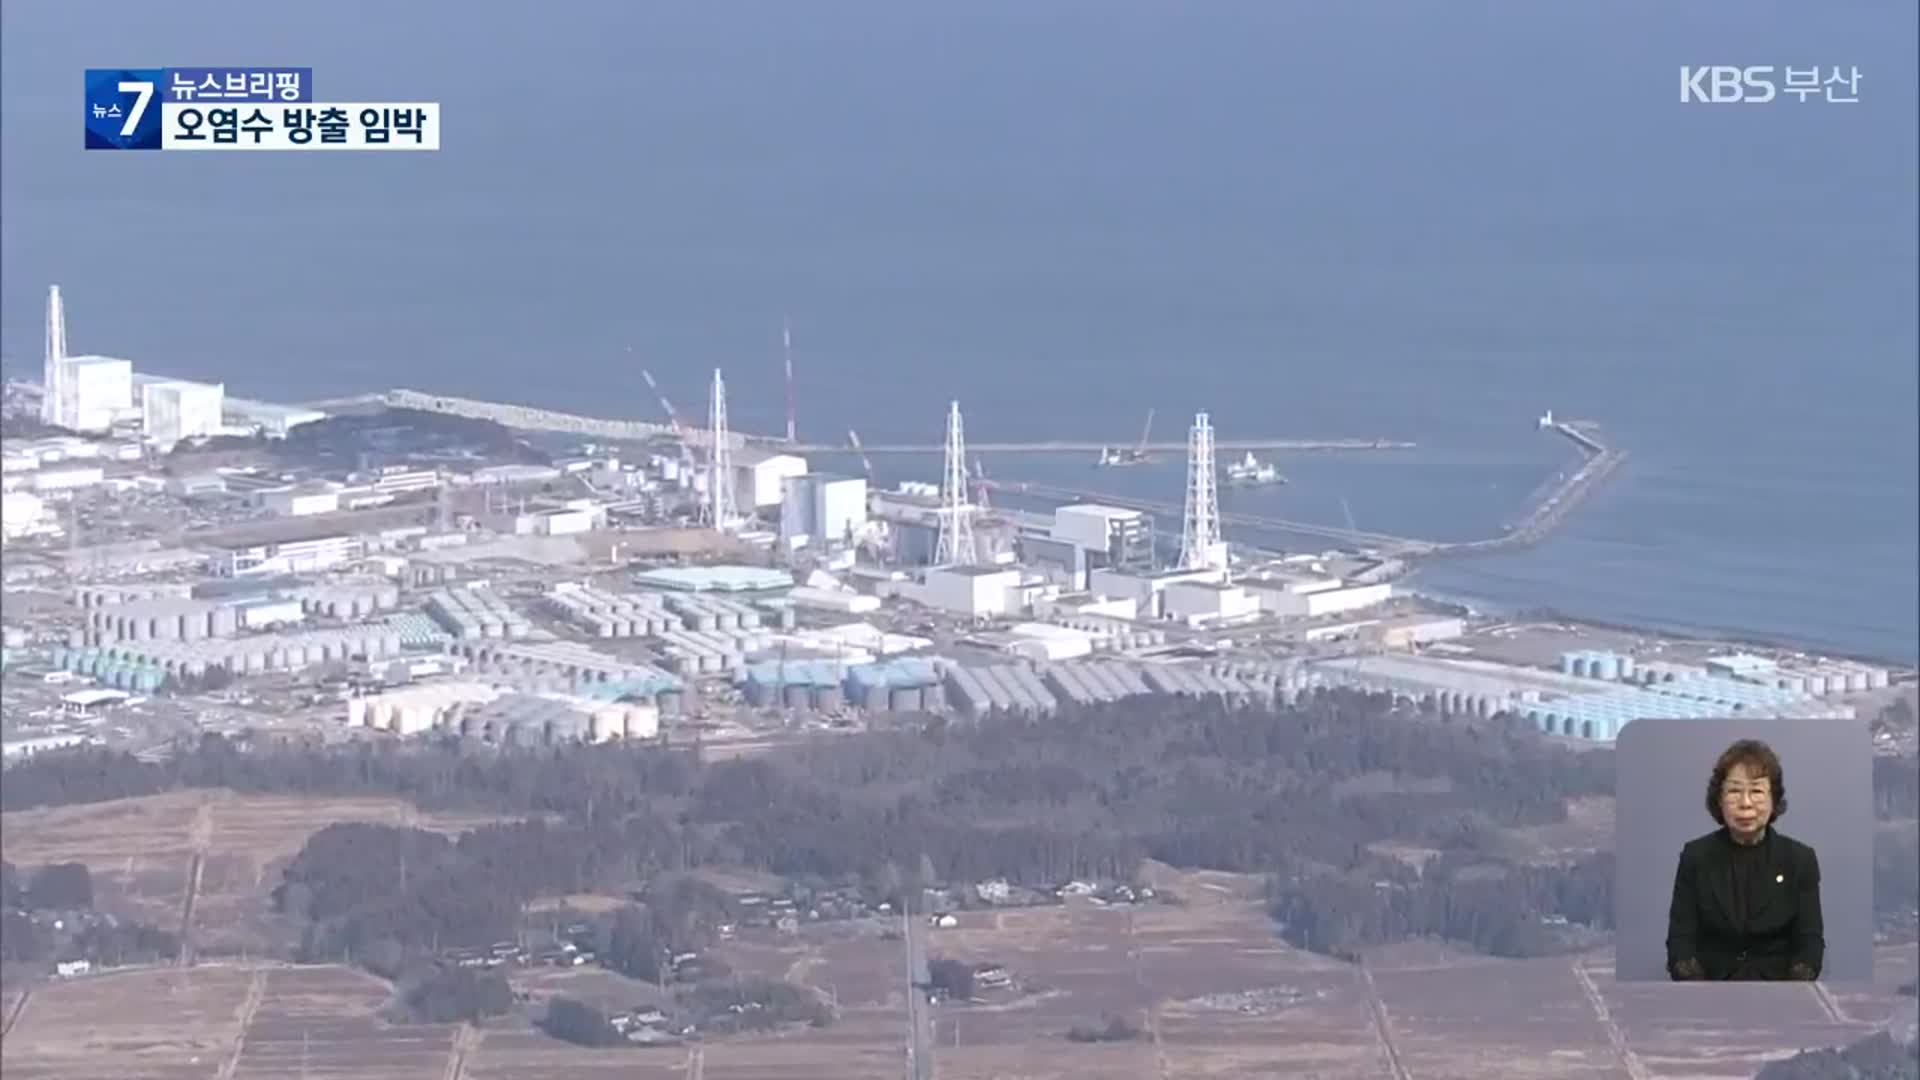 日 후쿠시마 원전 오염수 방출 임박…대응 부실, 불안 고조